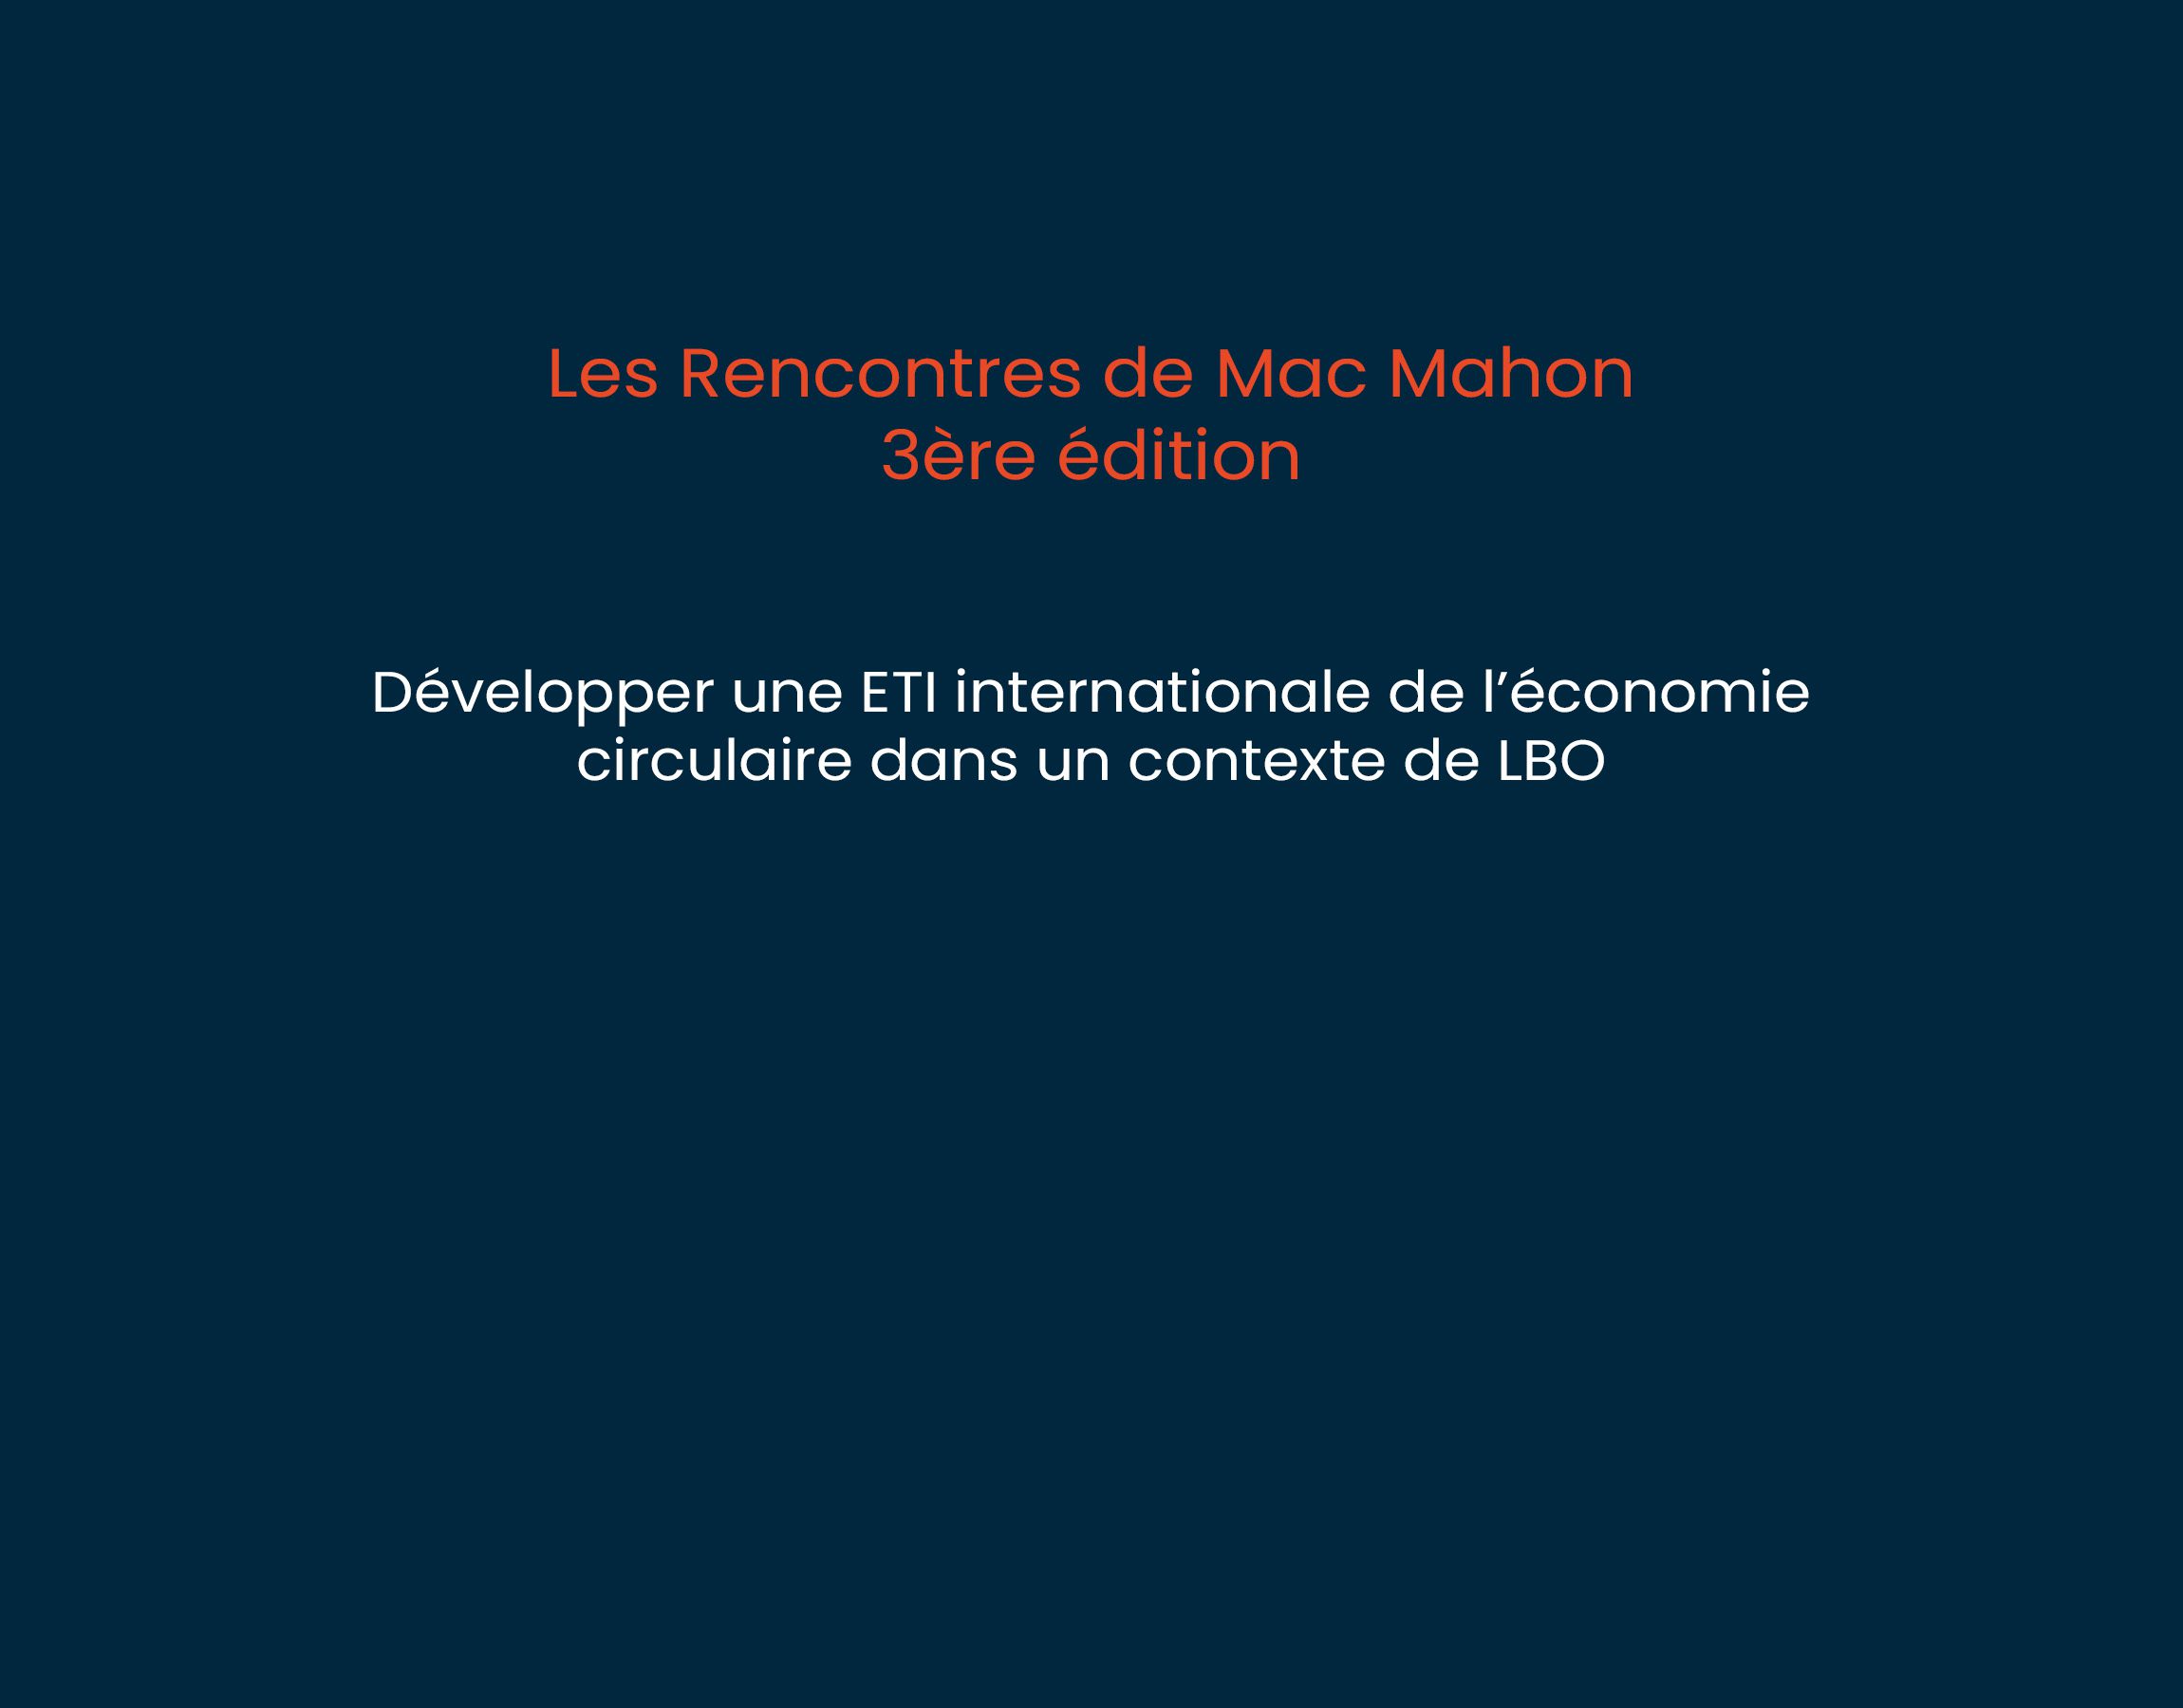 3ème édition “Les Rencontres de Mac Mahon”